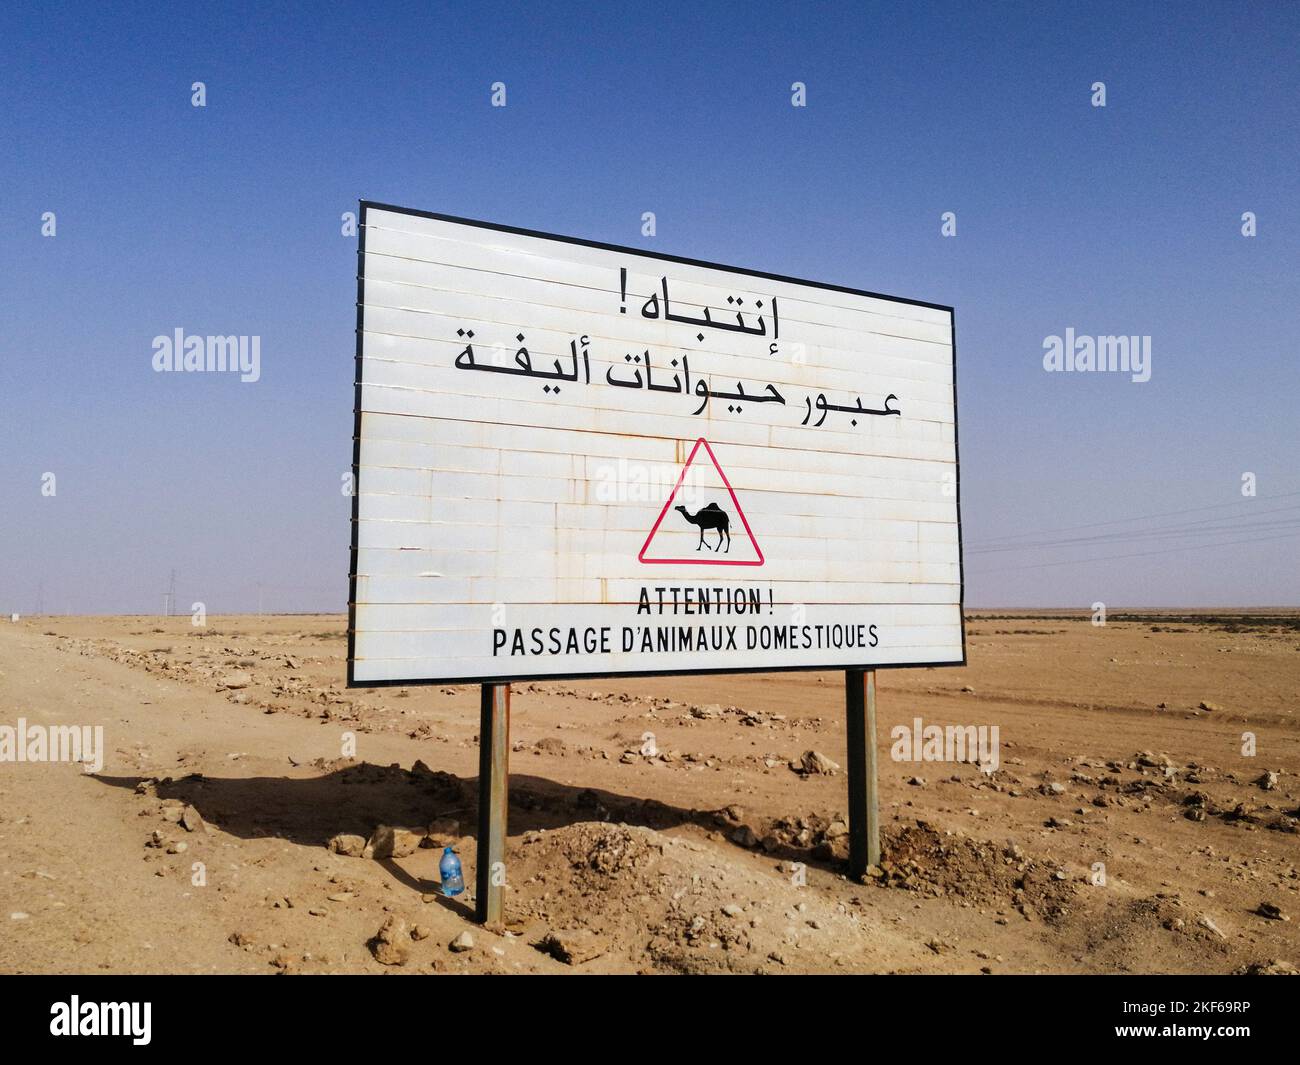 Marruecos, Sáhara Occidental, alrededores de Dakhla, cuidado con los camellos Foto de stock